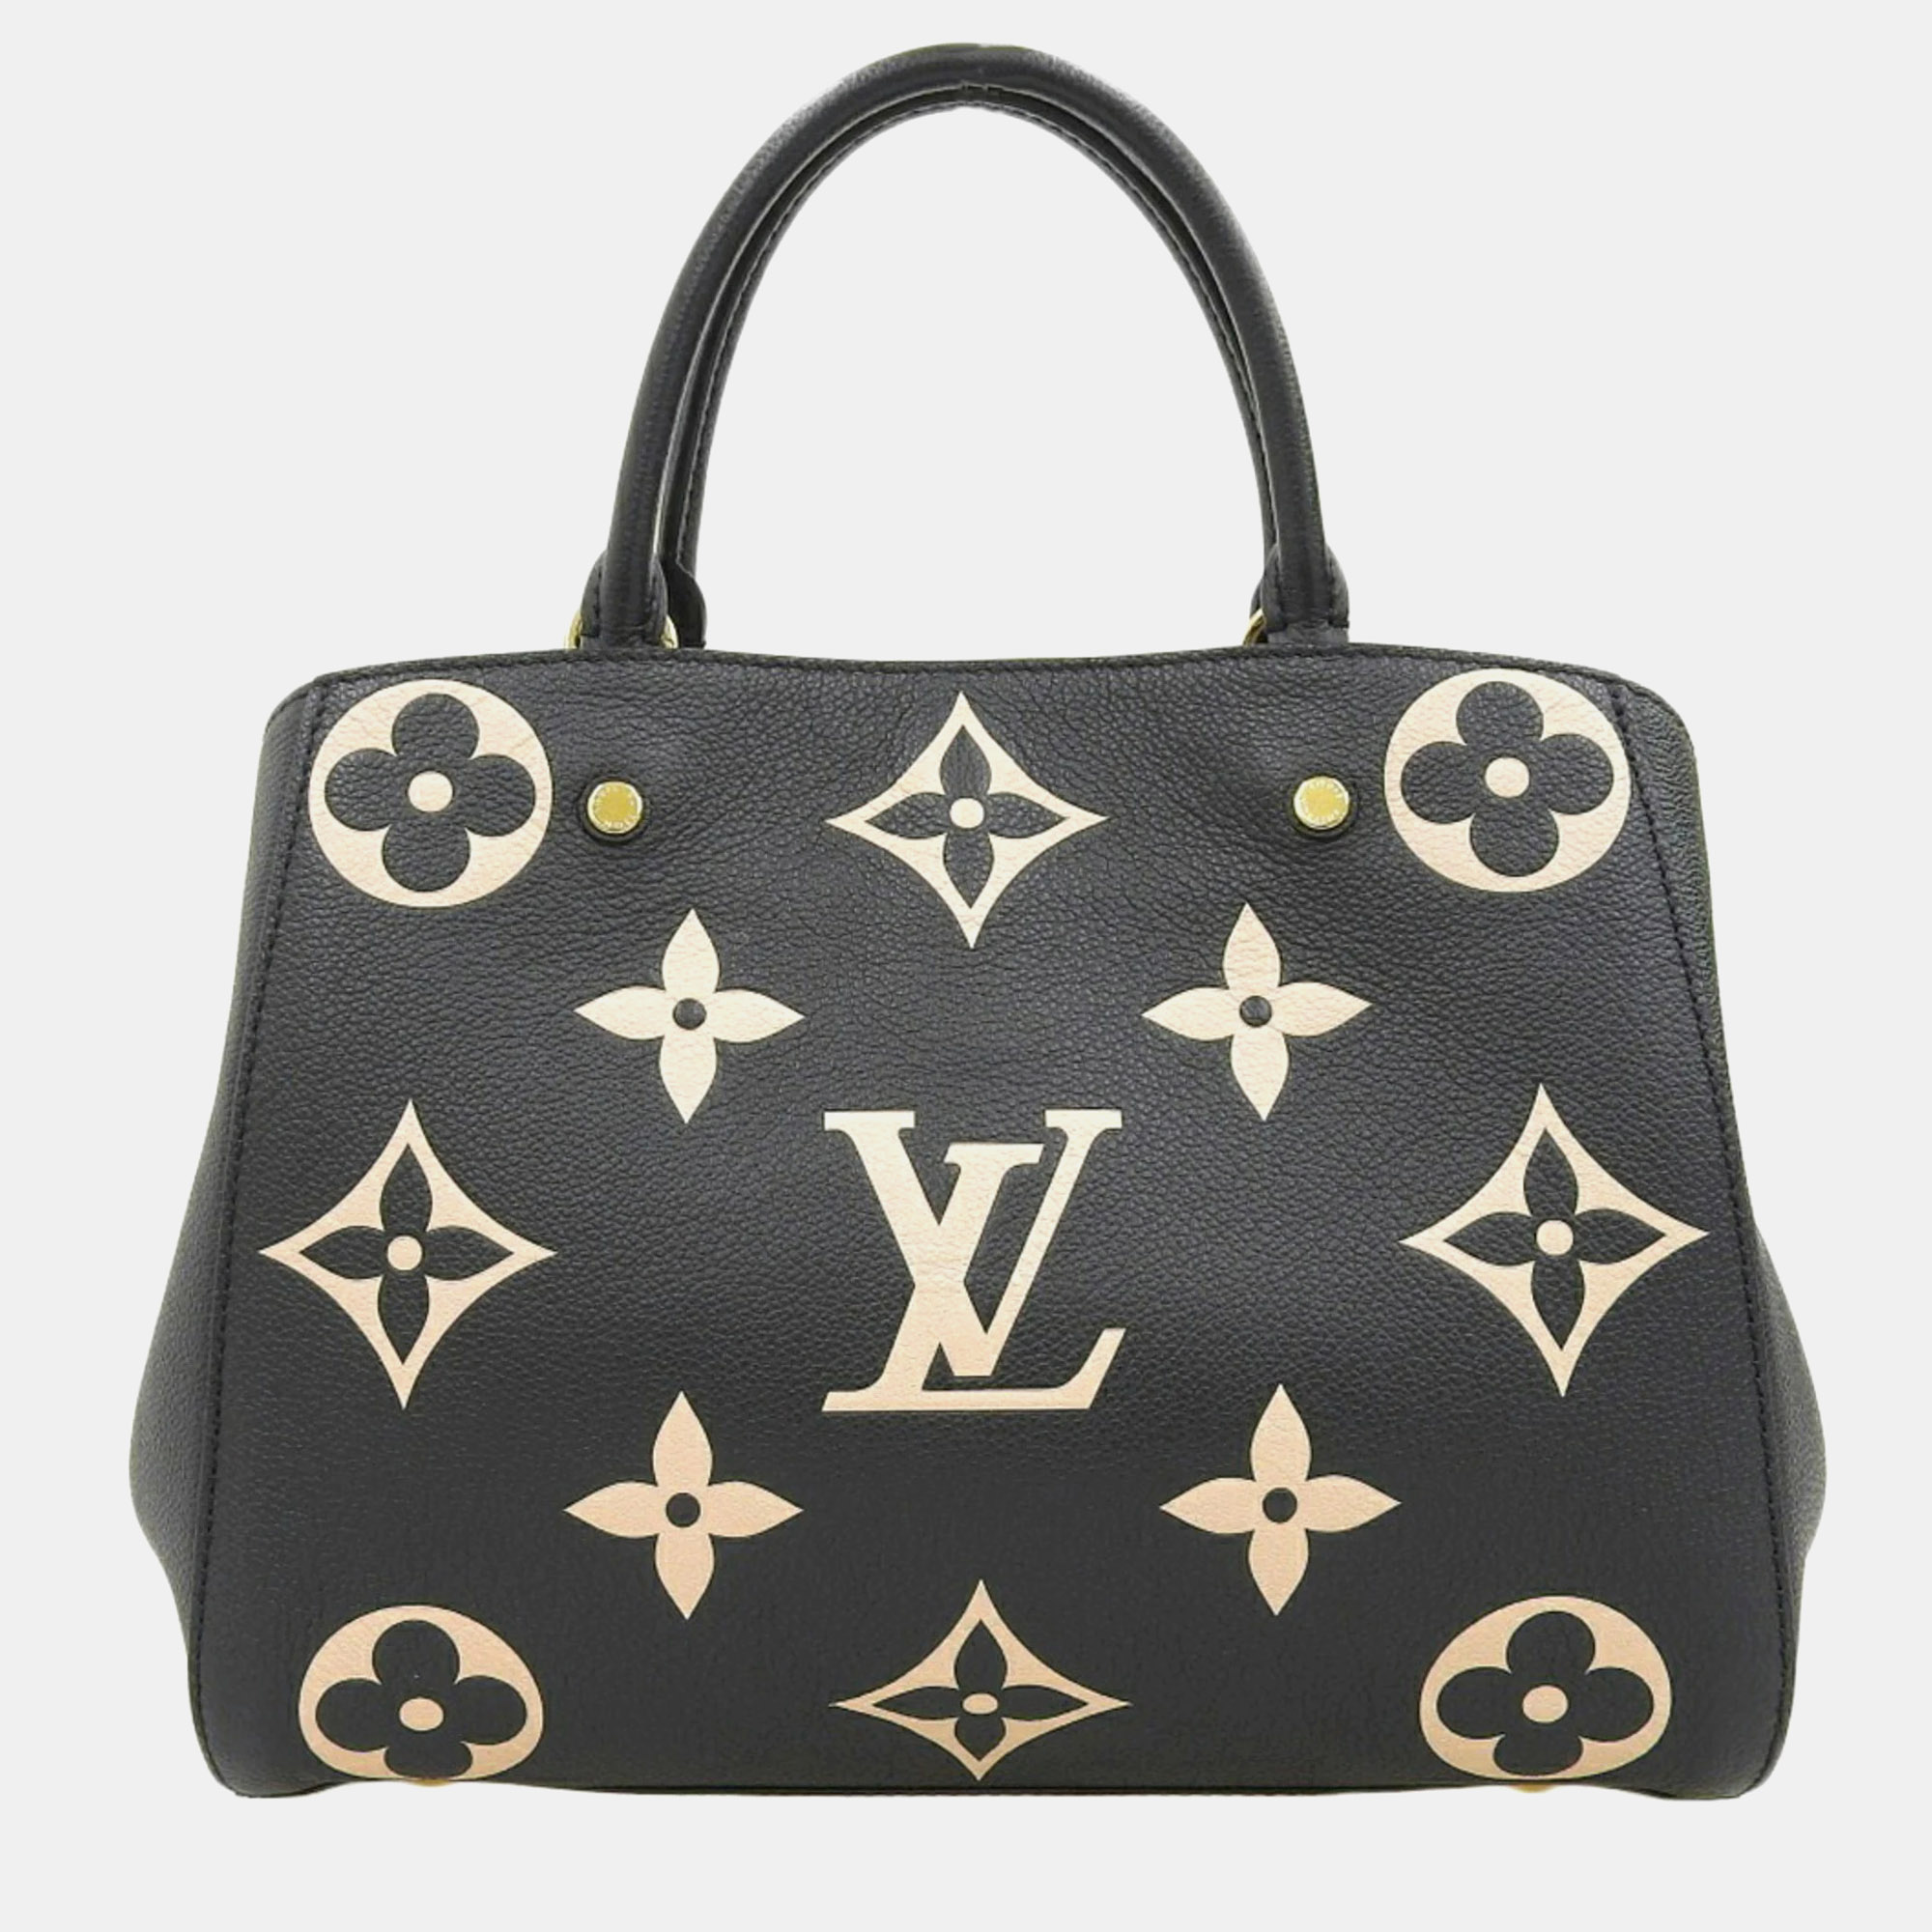 

Louis Vuitton Bicolor Leather MM Montaigne Satchel Bag, Black